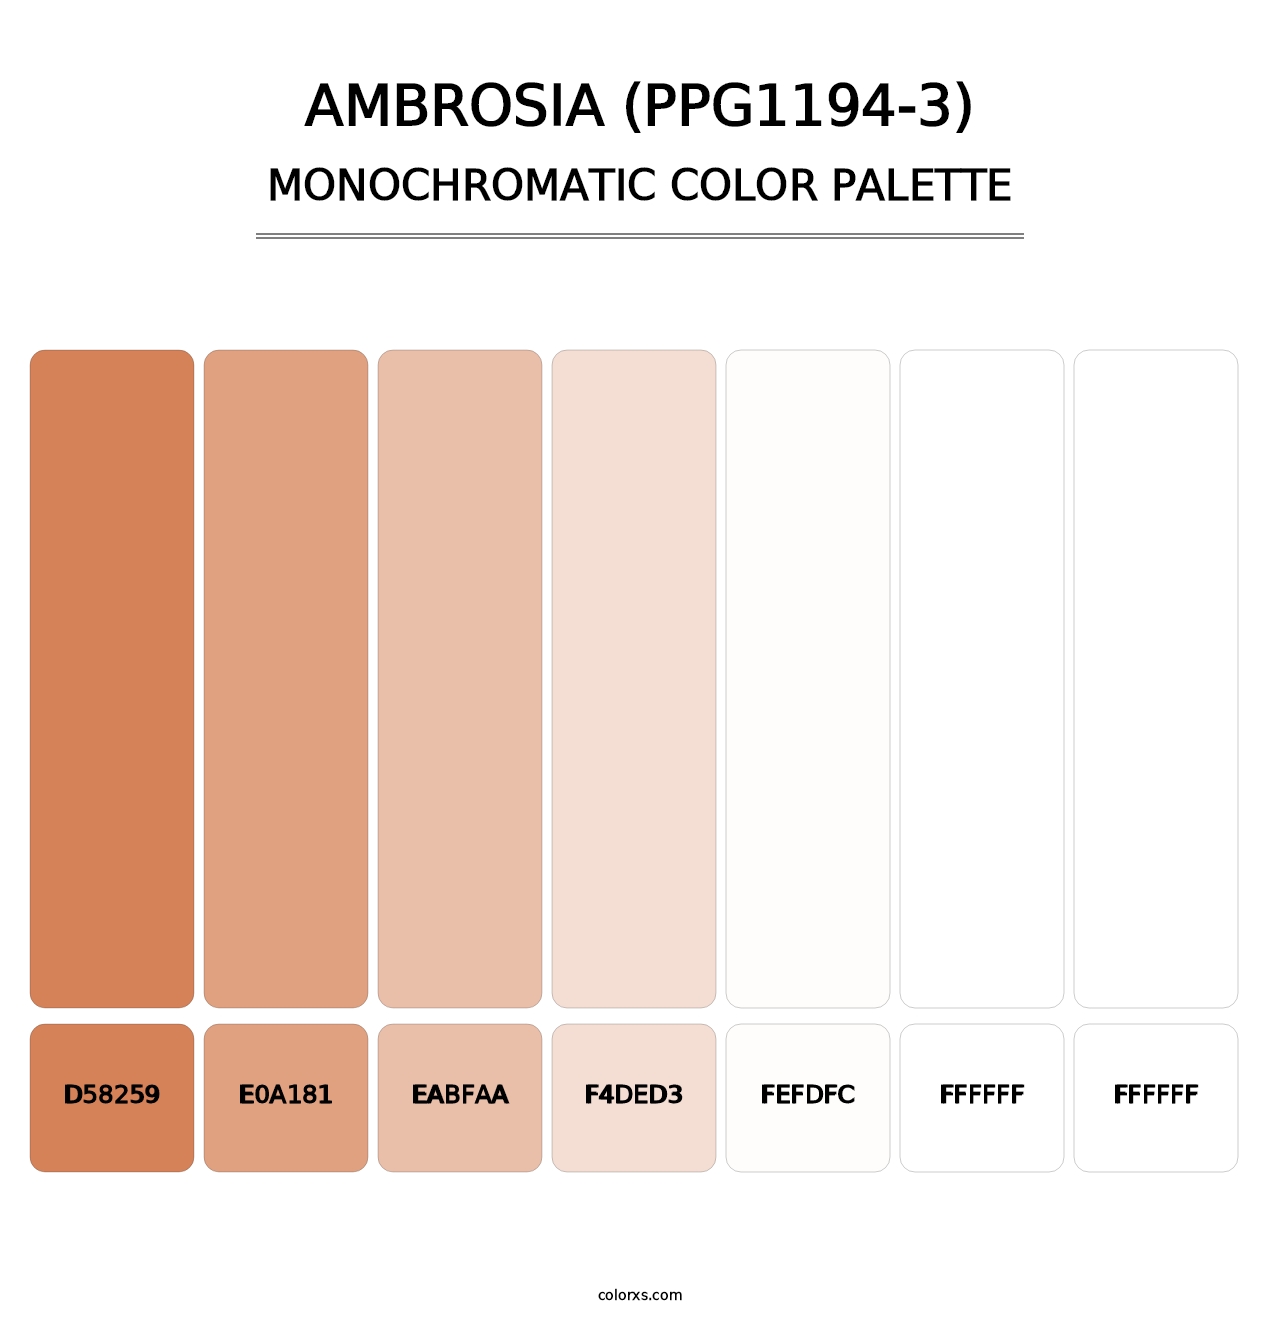 Ambrosia (PPG1194-3) - Monochromatic Color Palette